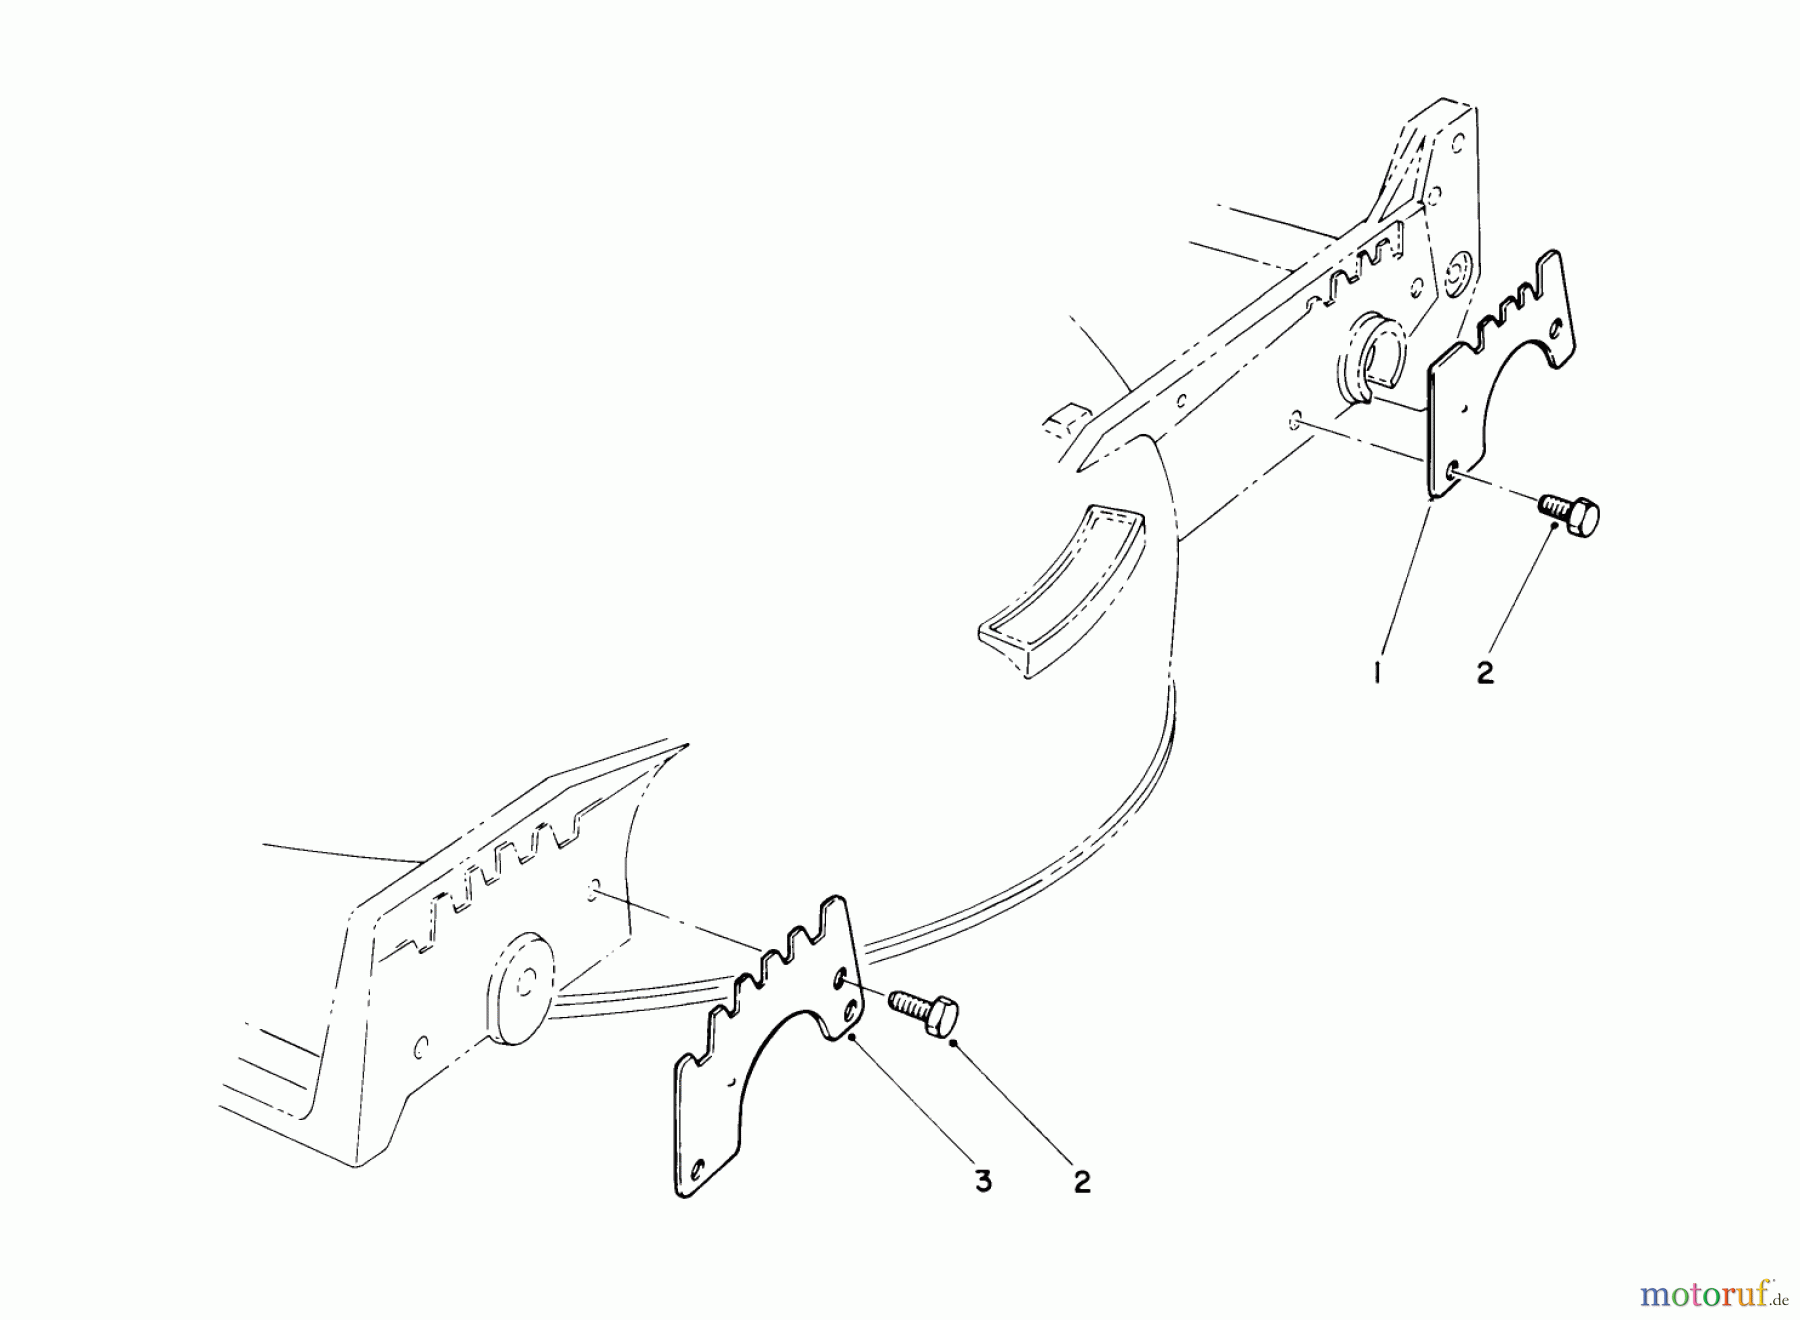  Toro Neu Mowers, Walk-Behind Seite 1 20680 - Toro Lawnmower, 1990 (0000001-0999999) WEAR PLATE MODEL NO. 49-4080 (OPTIONAL)